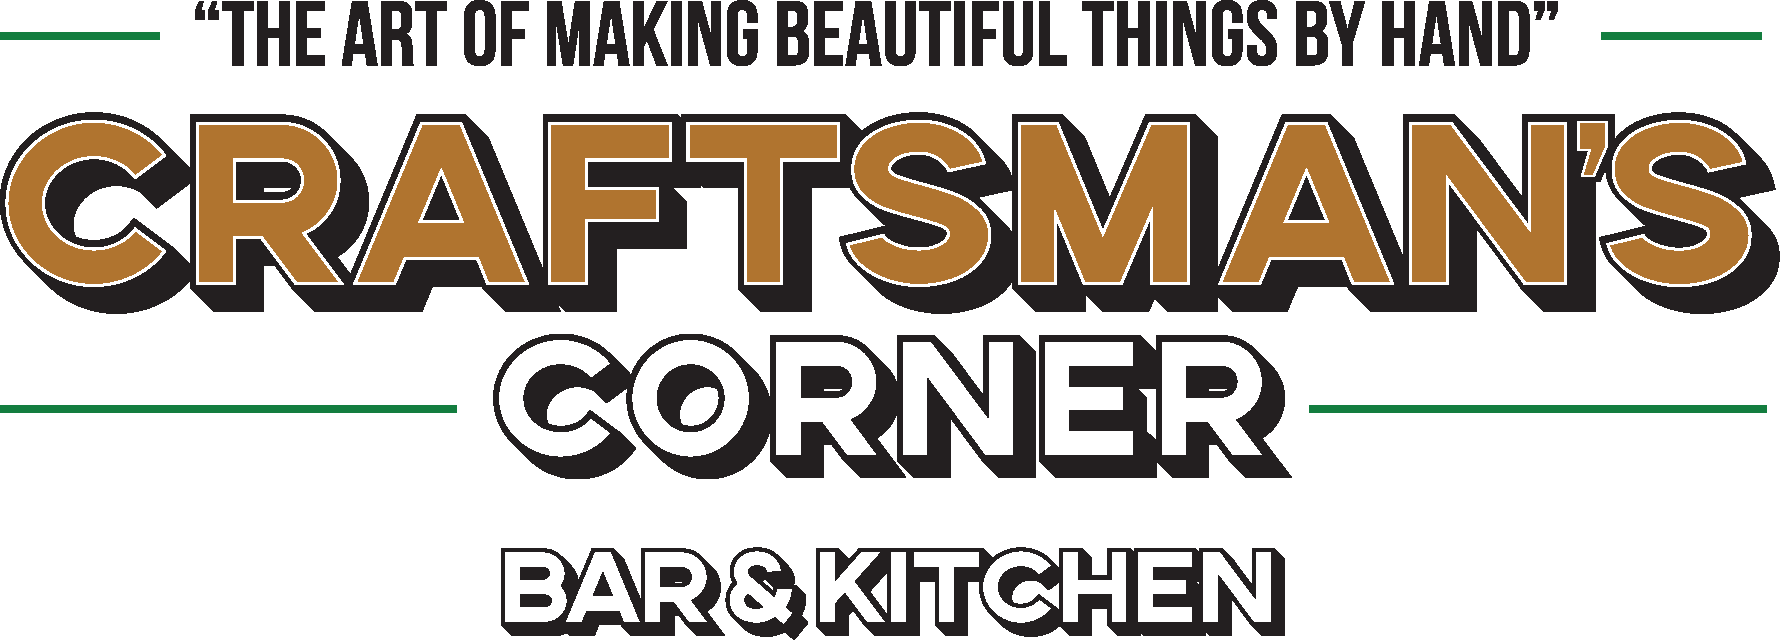 Craftsmans Corner Bar & Kitchen Logo